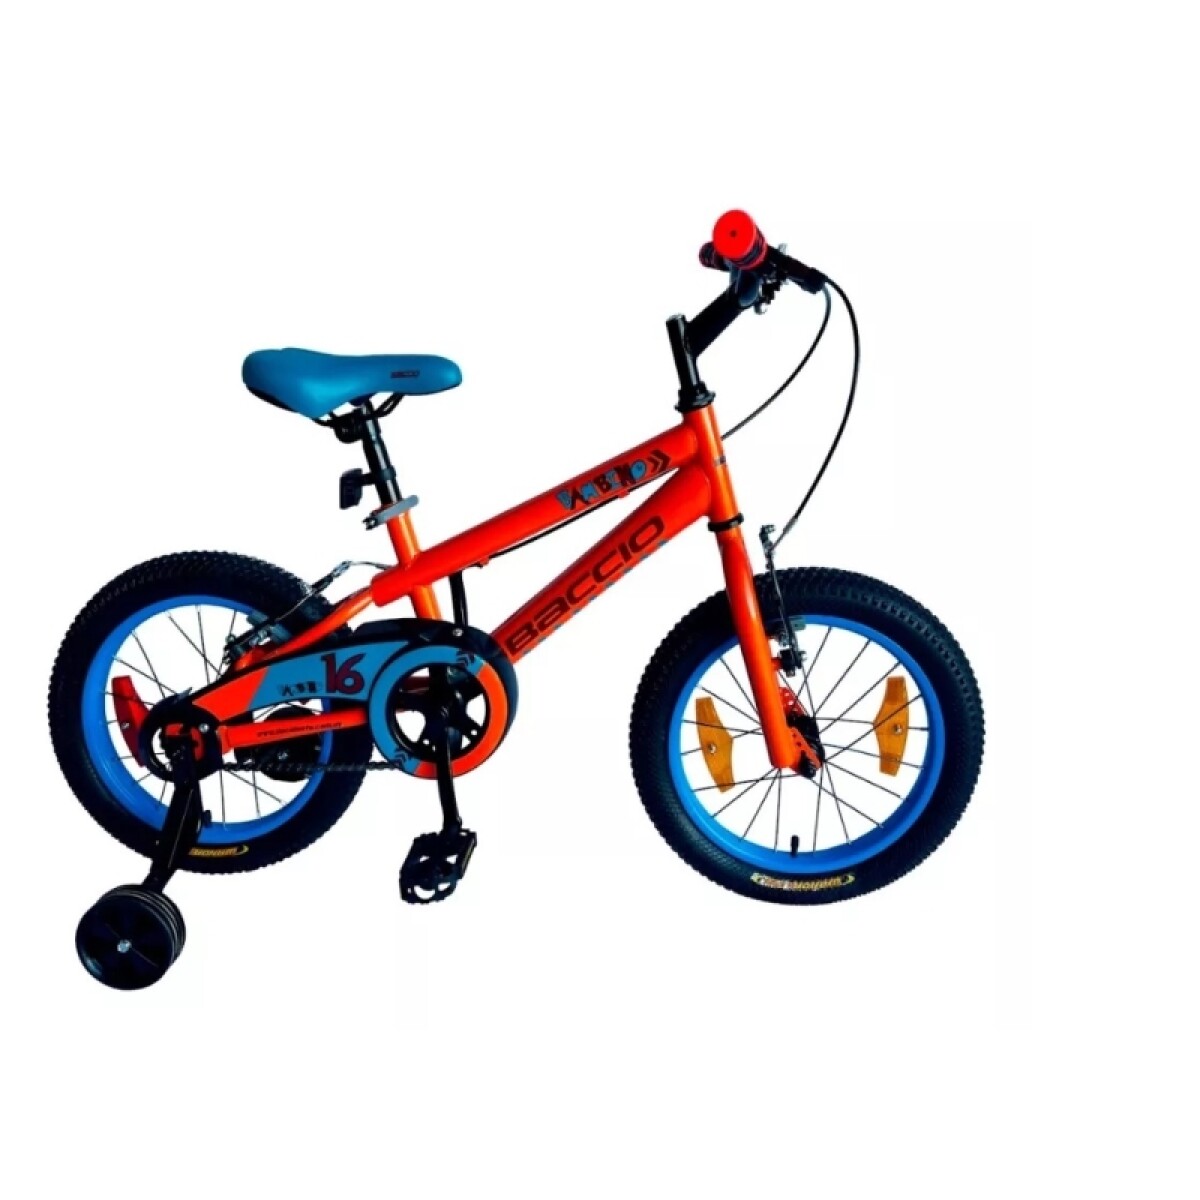 Bicicleta Baccio R.16 Niño Bambino (std) - Naranja/turquesa 